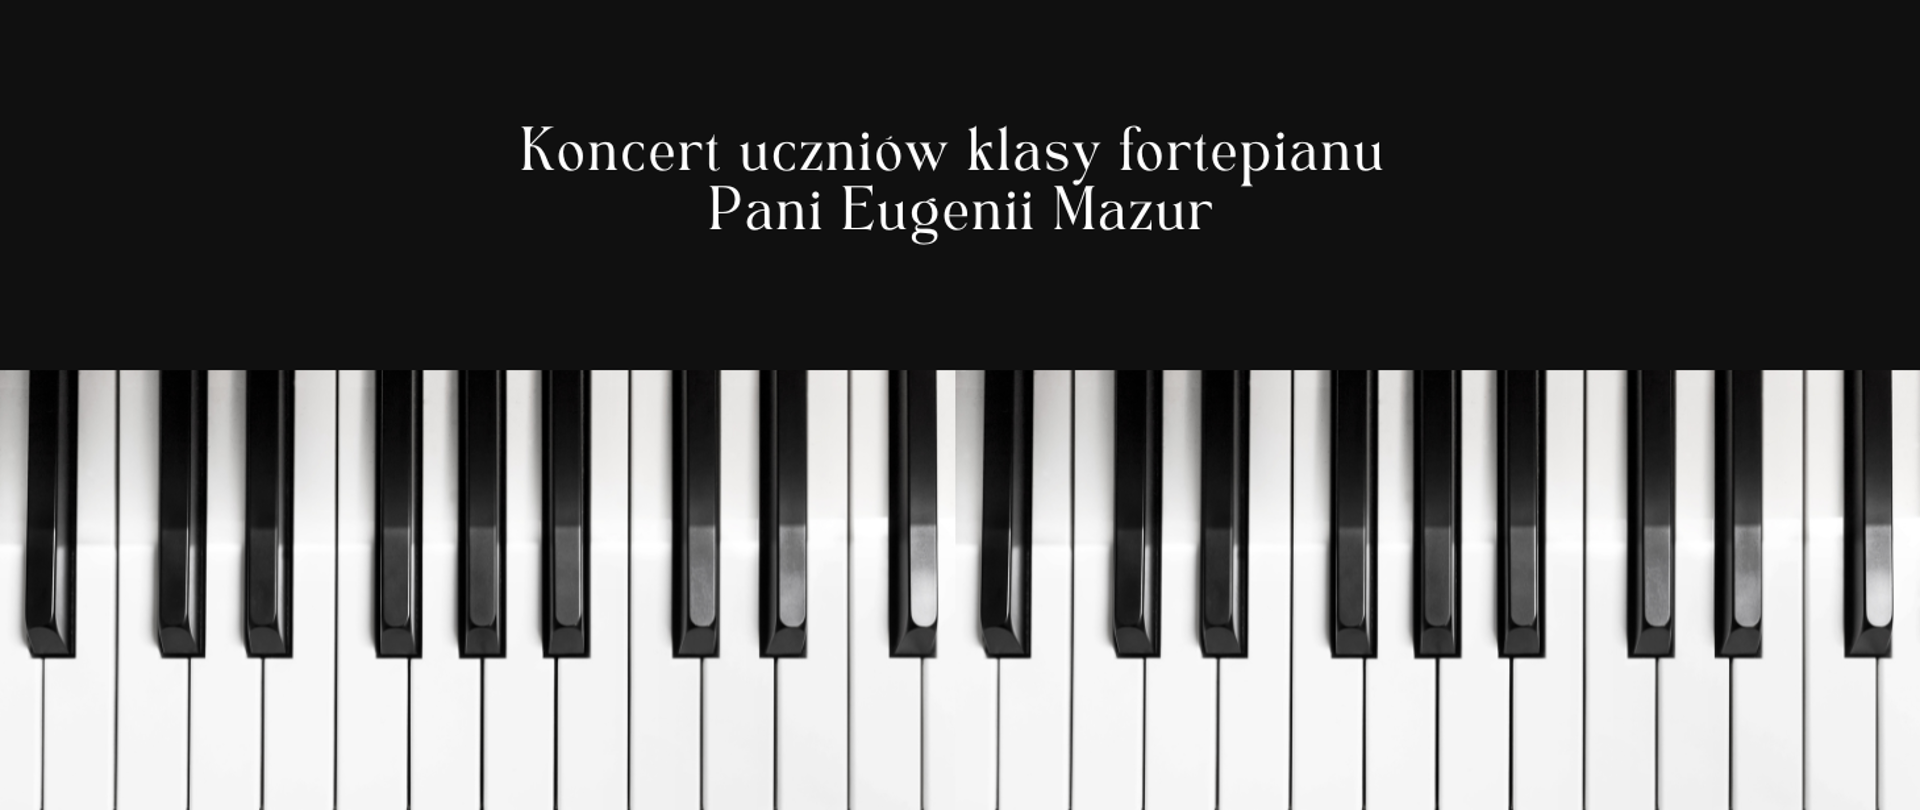 Góra obrazka ma czarne tło i biały napis: "koncert uczniów klasy fortepianu Pani Eugenii Mazur". U dołu obrazka klawiatura fortepianu- biało- czarne klawisze.